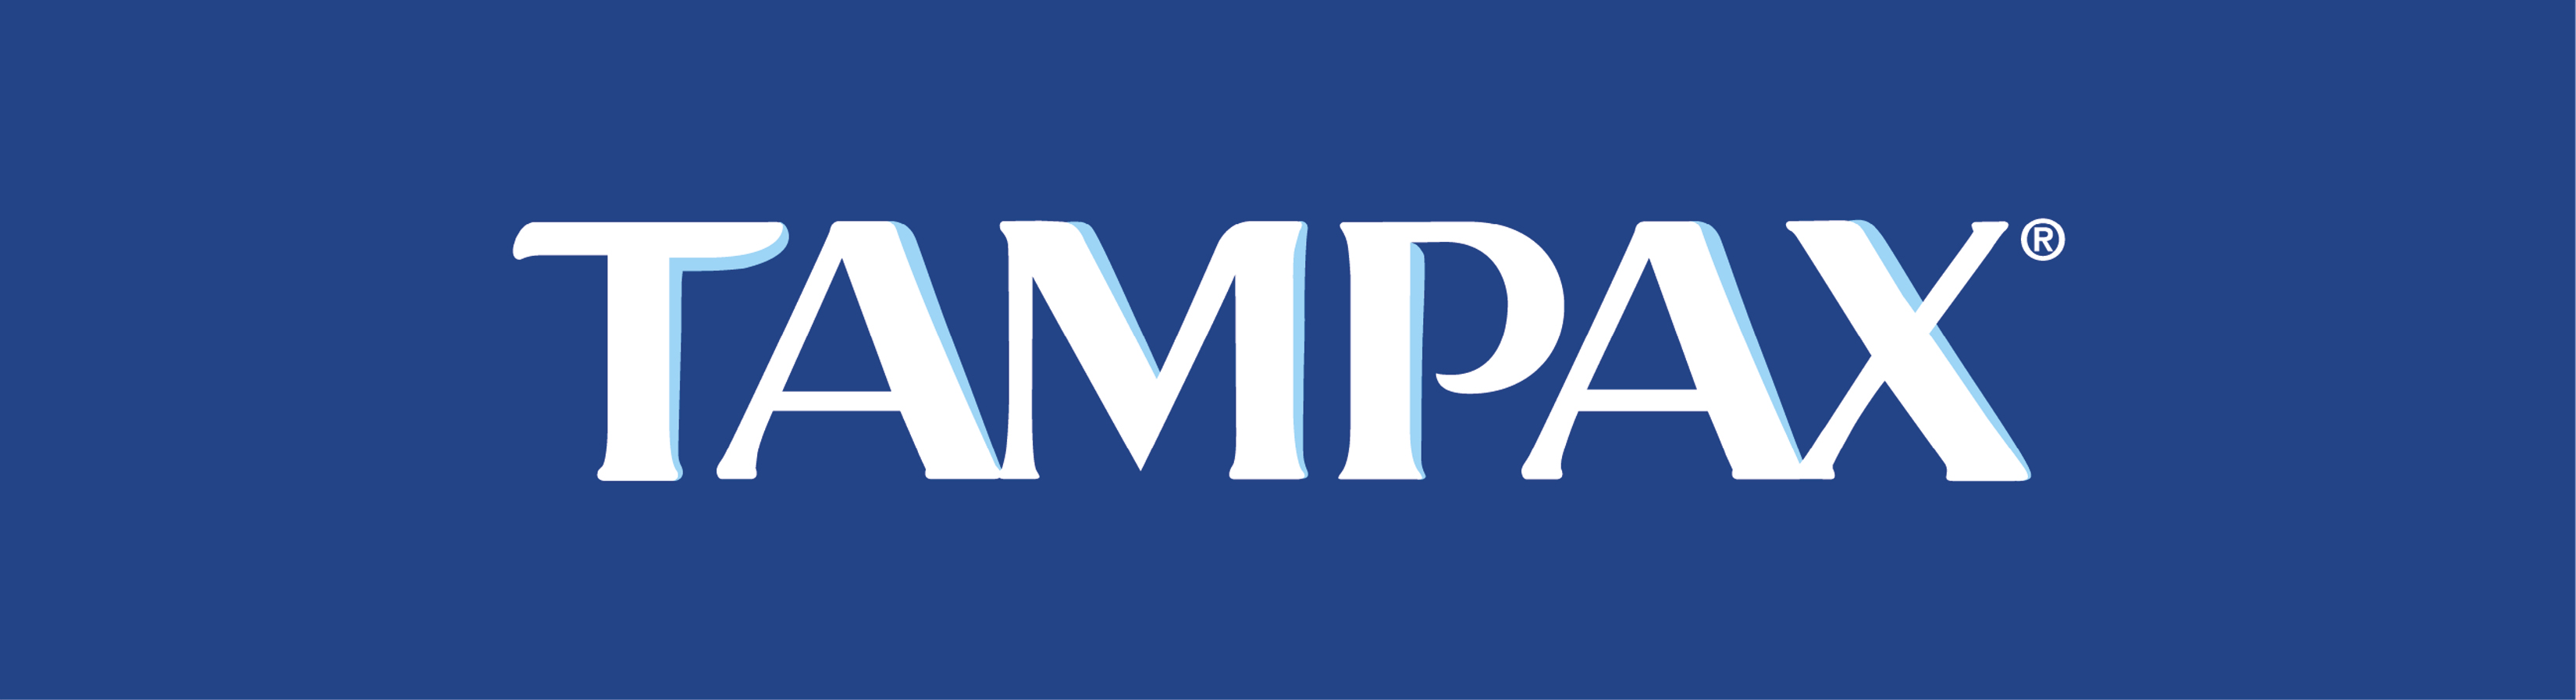 tampax Logo photo - 1